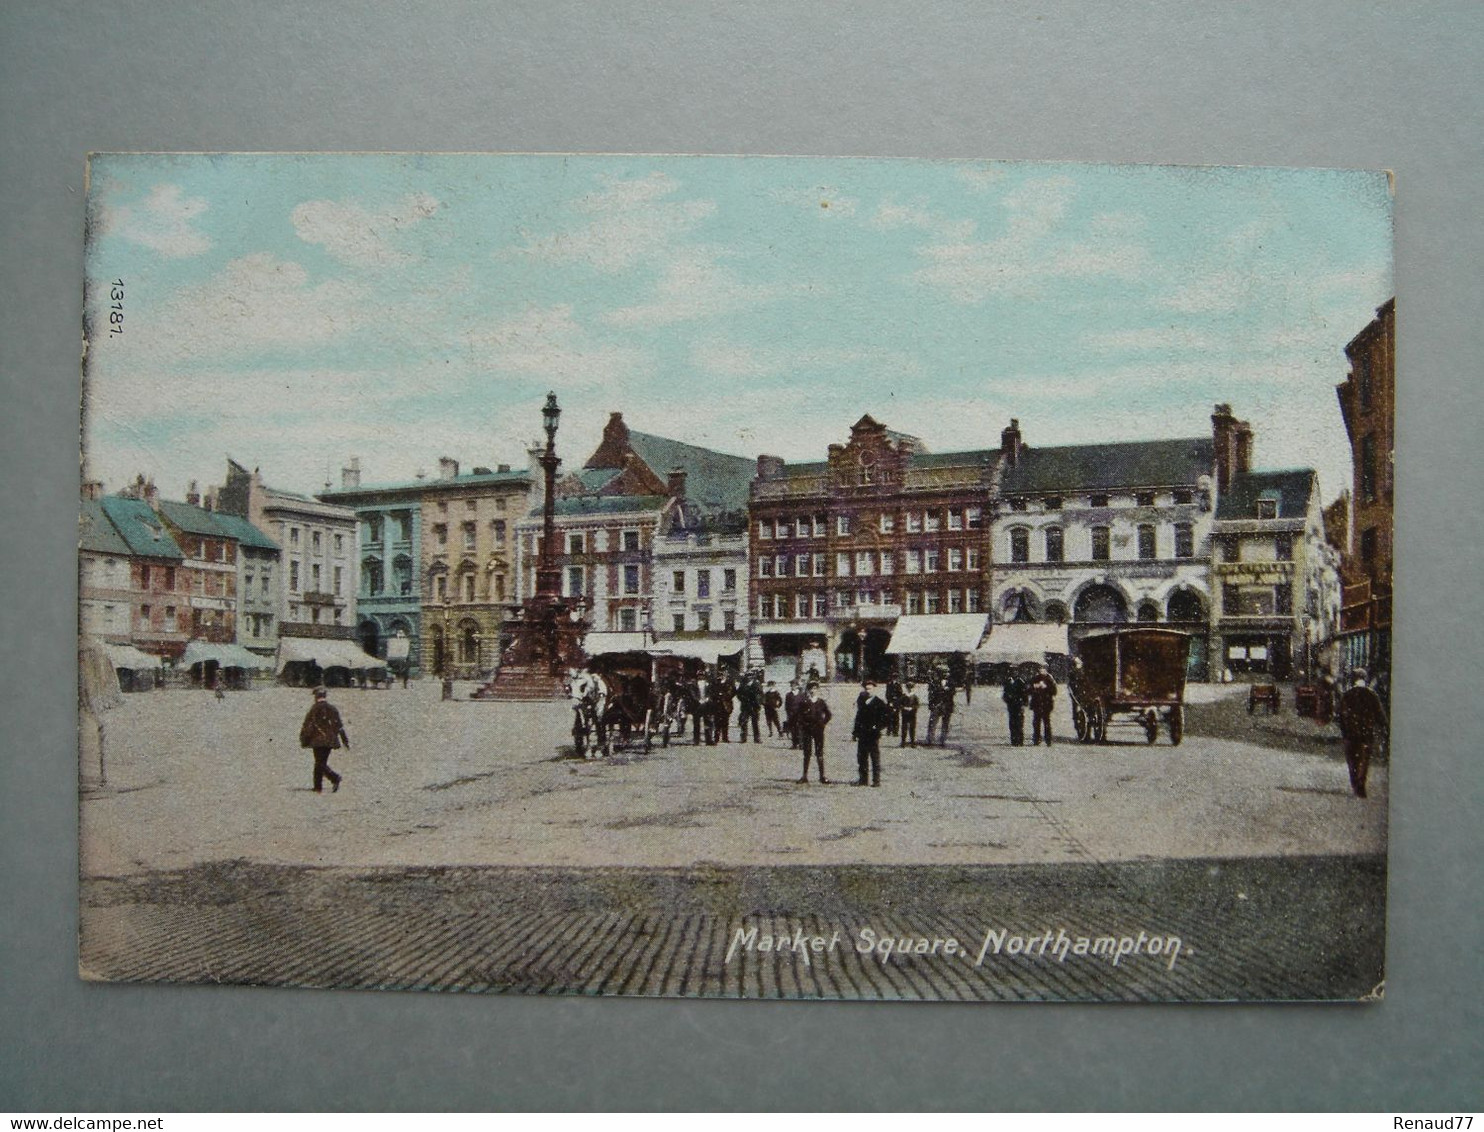 Northampton - Market Square - Northamptonshire